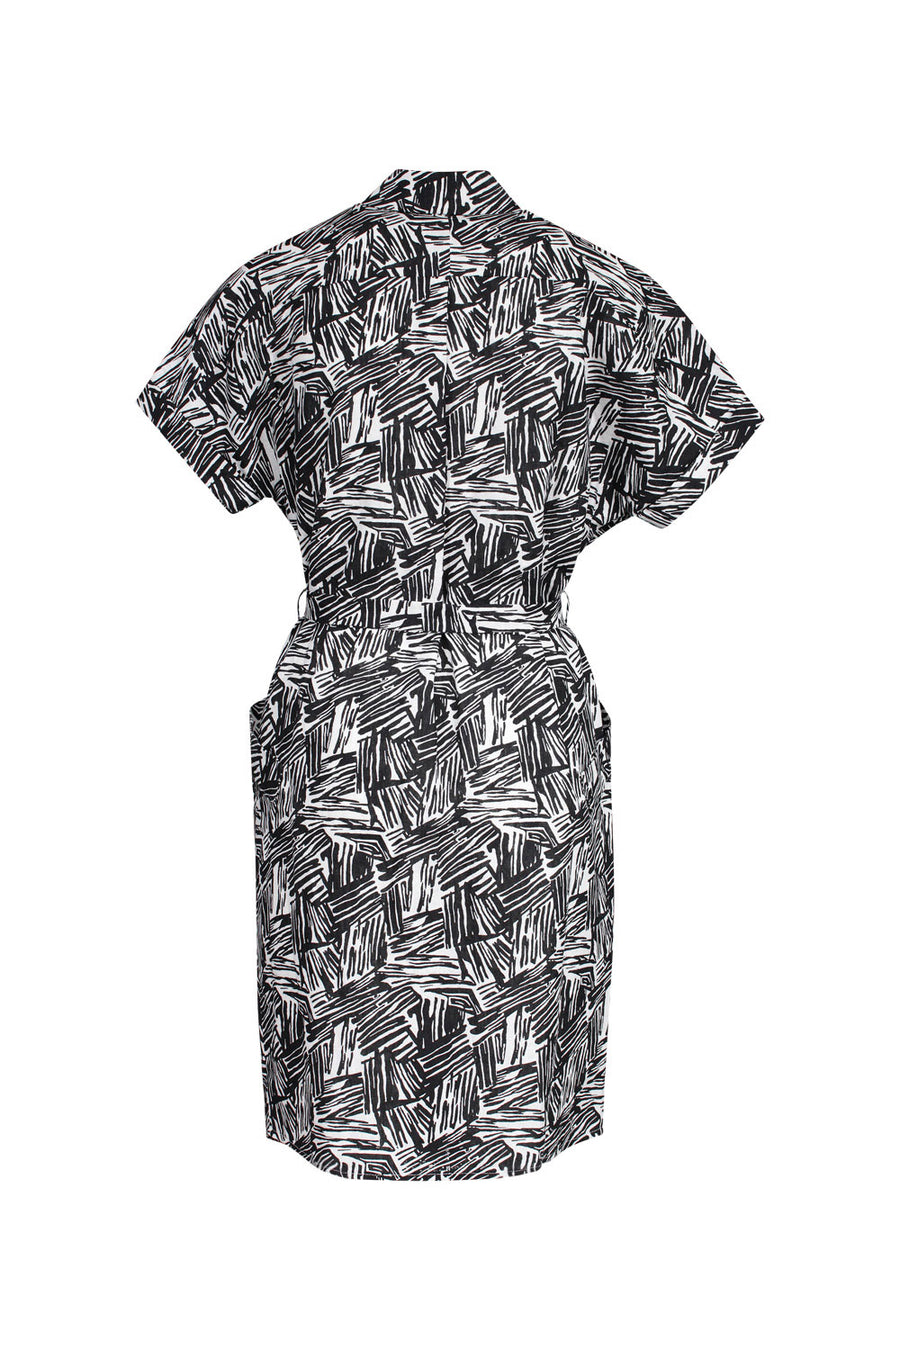 SAMPLE | Linwood Printed Dress | XS